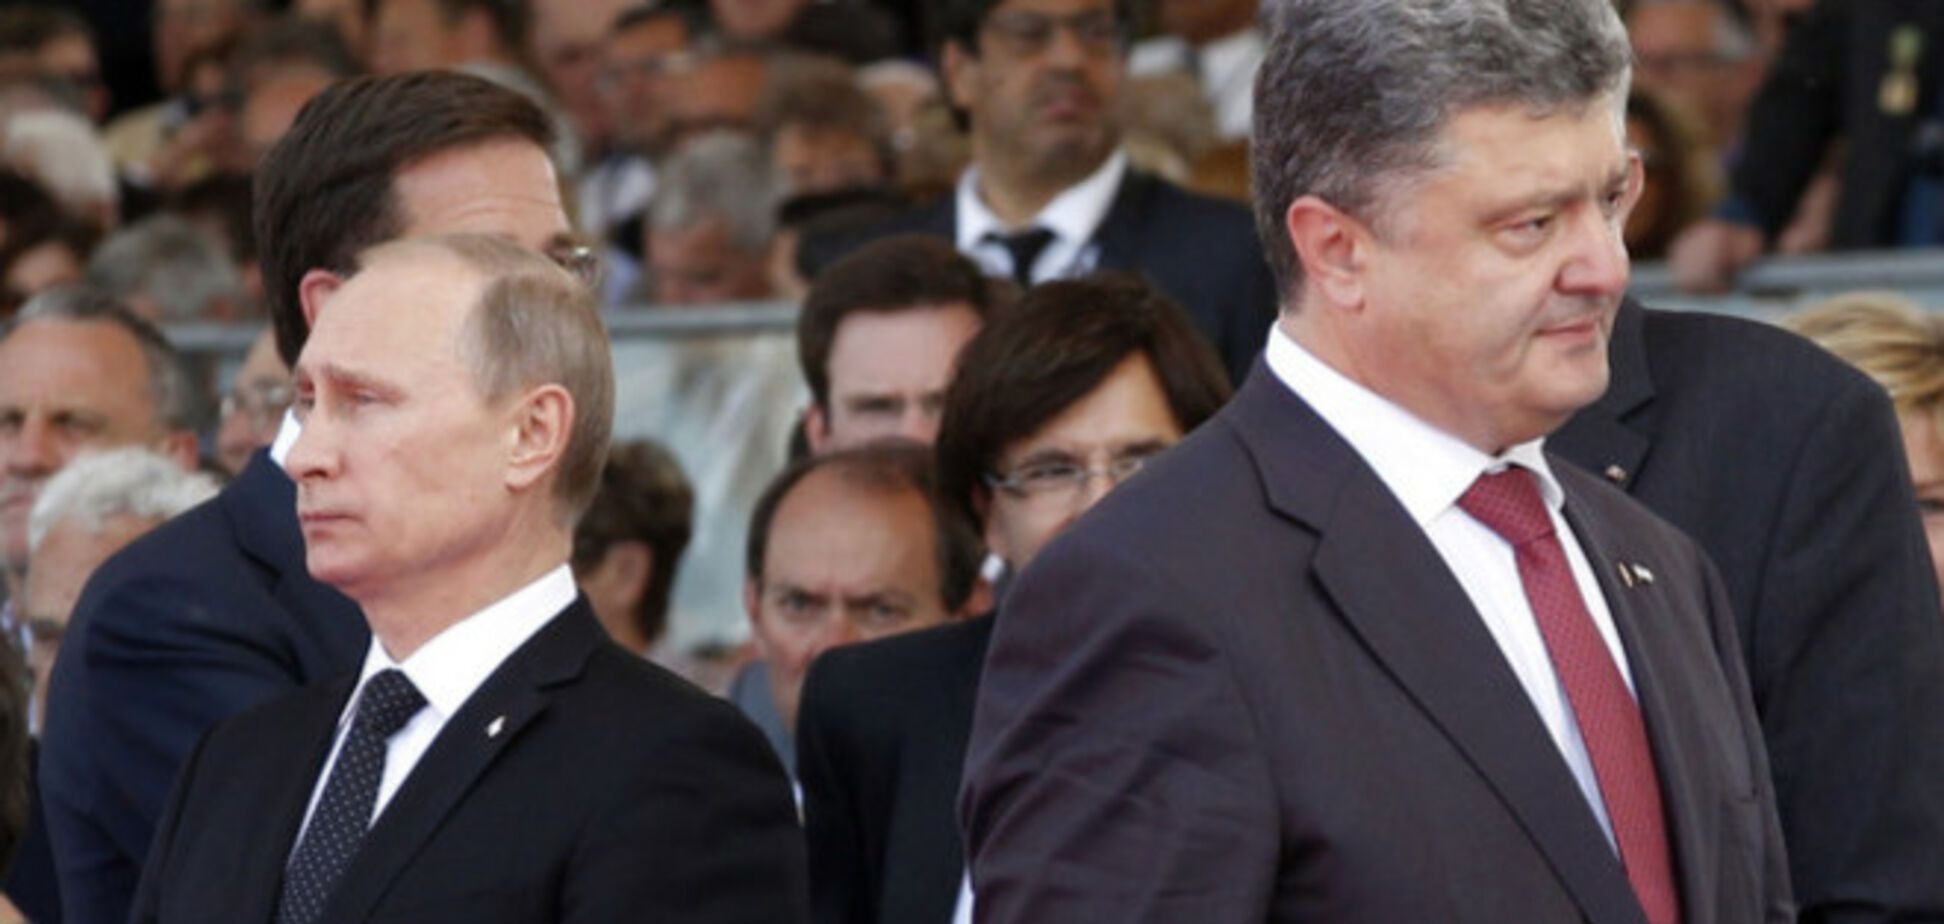 Эксперты о встрече президентов: на Порошенко будут давить, но Путин ничего не получит